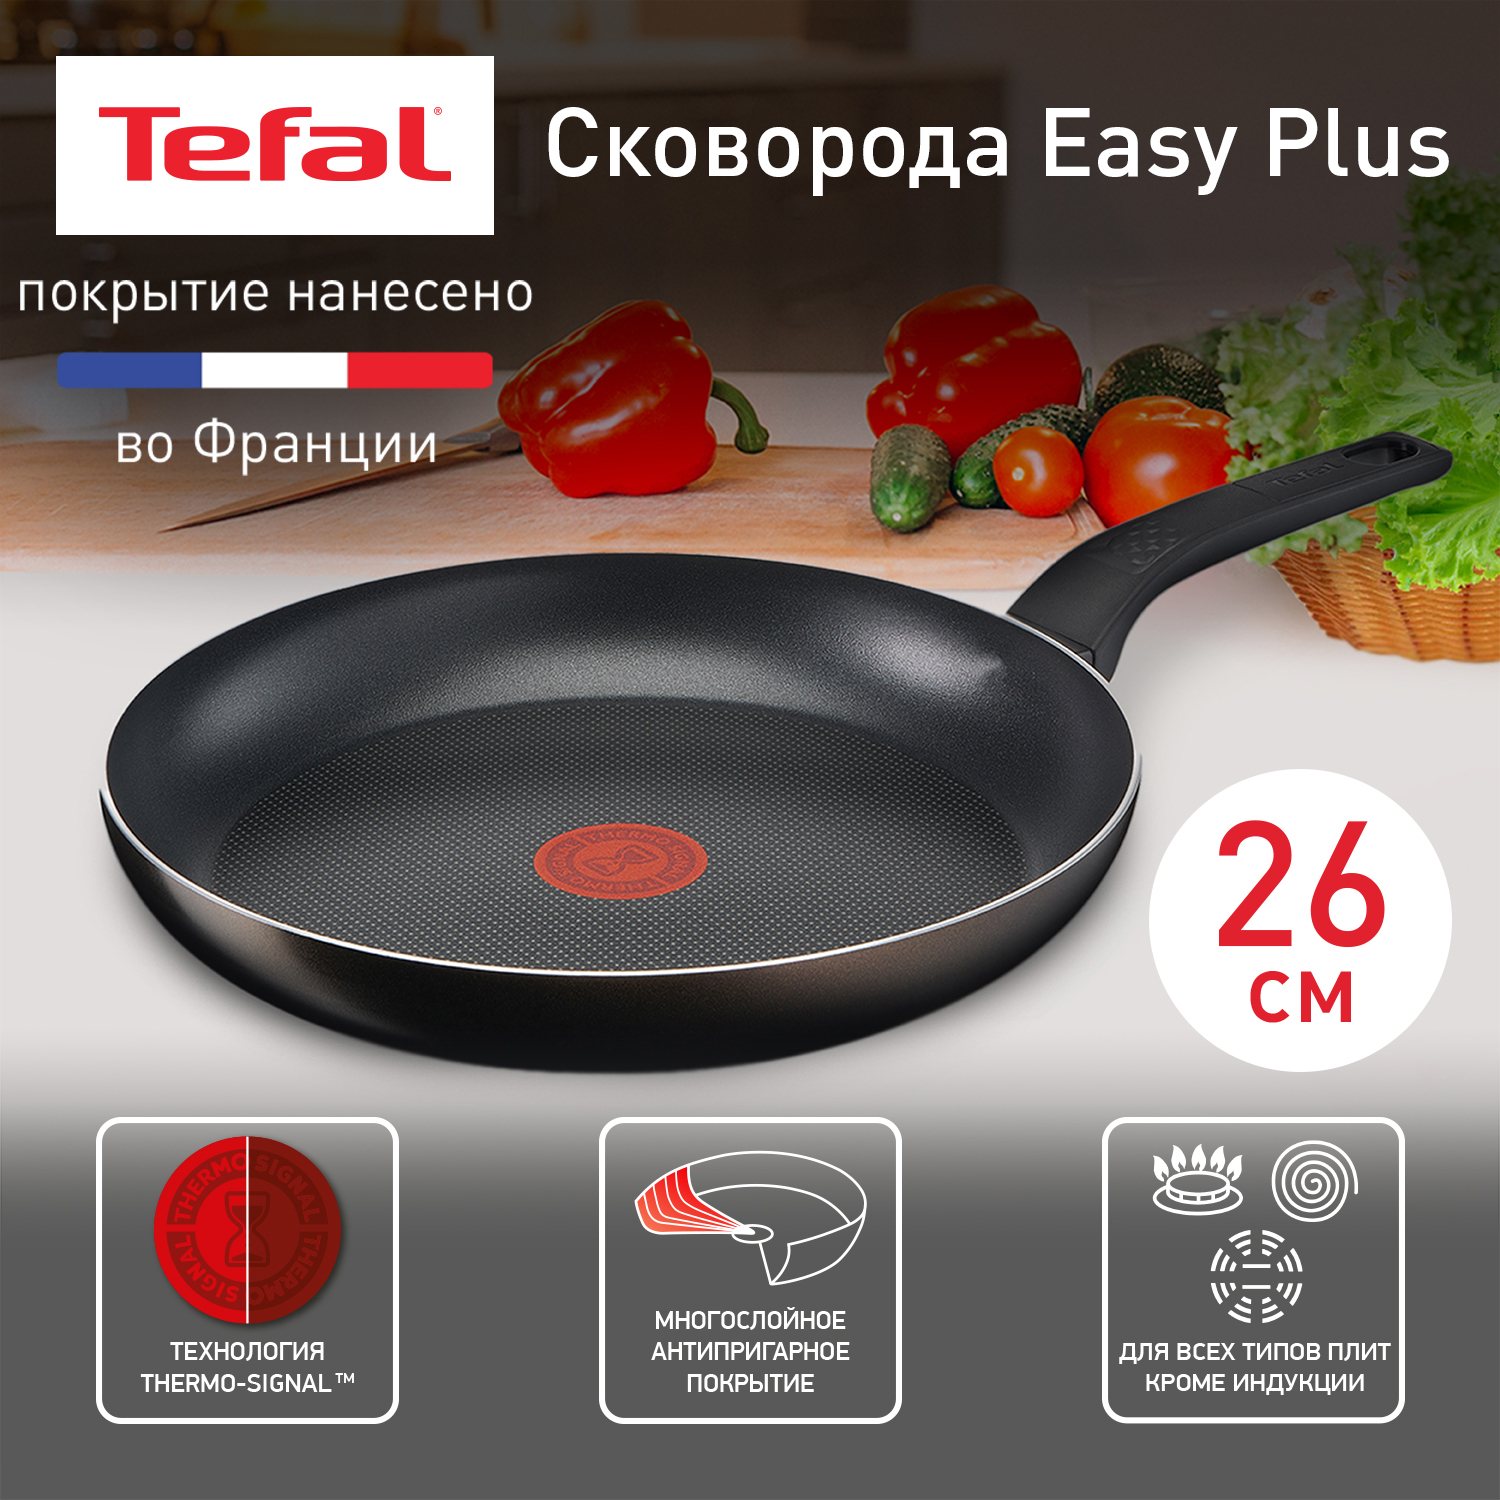 Сковорода универсальная Tefal Easy Plus 26 см черный 04206126